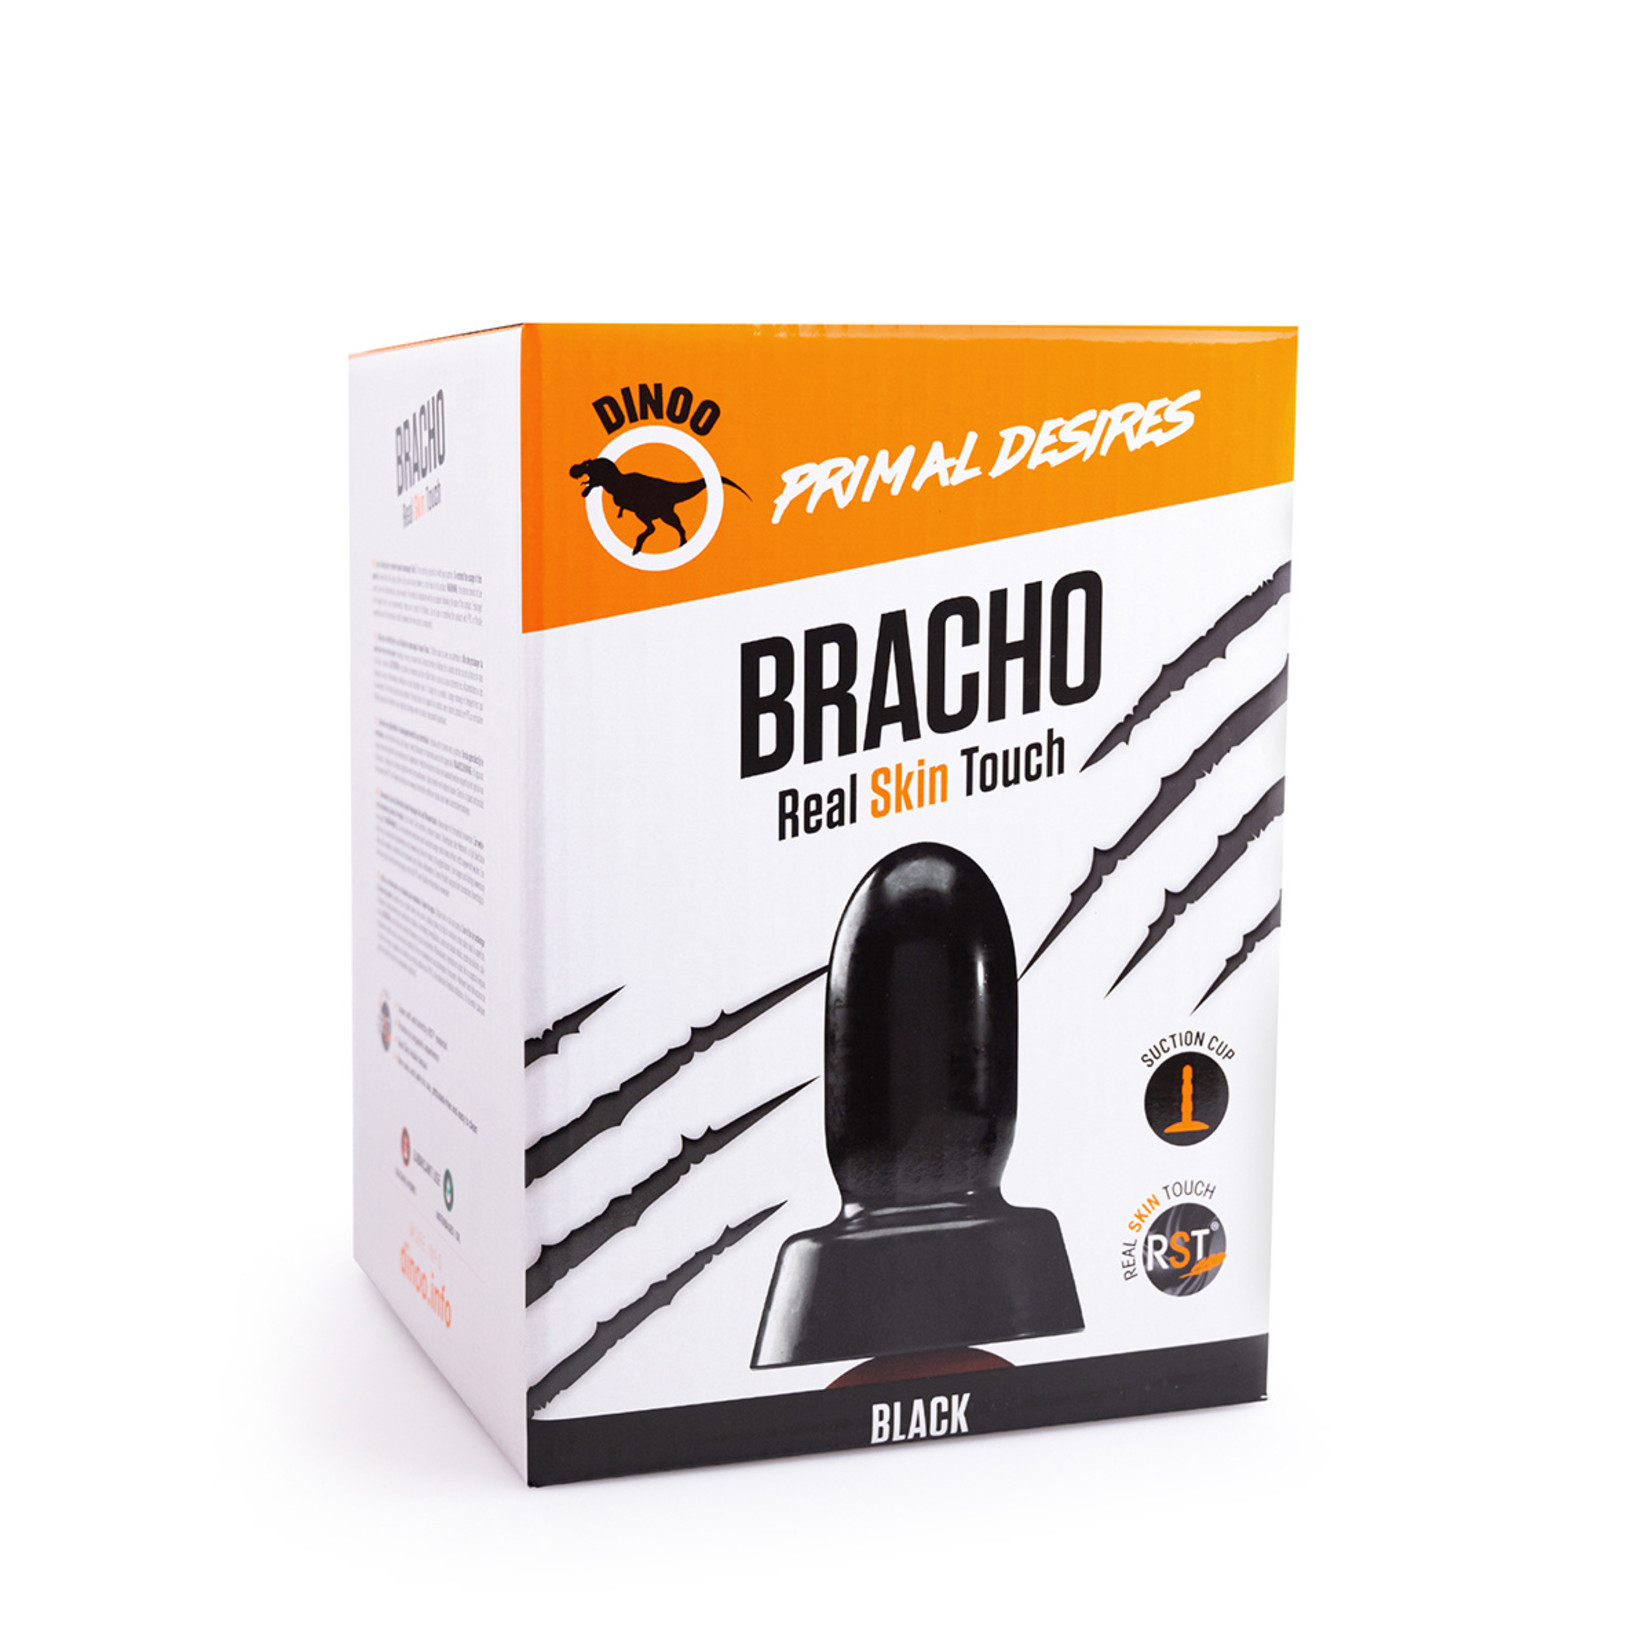 Dinoo Dinoo Primal - Bracho Black